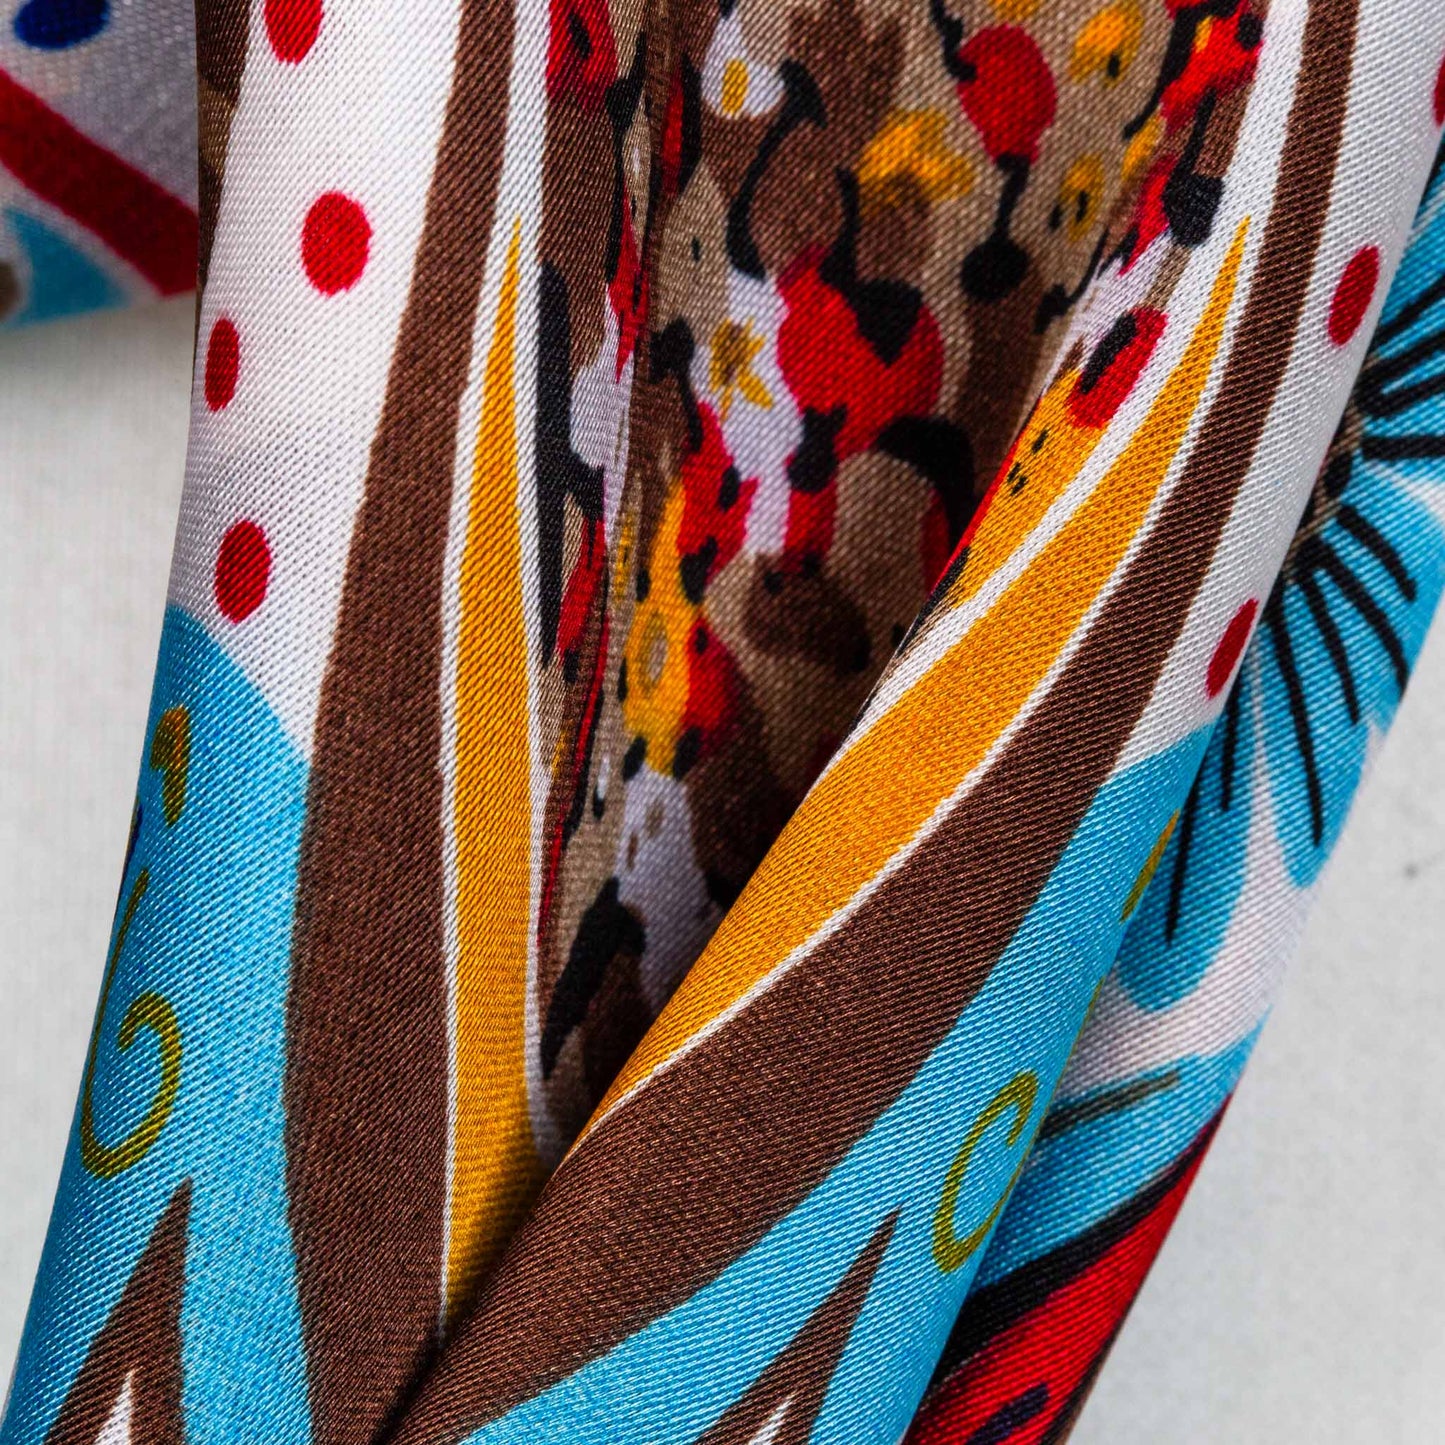 Eșarfă damă din mătase cu imprimeu ozora  , 70 x 70 cm - Albastru, Roșu